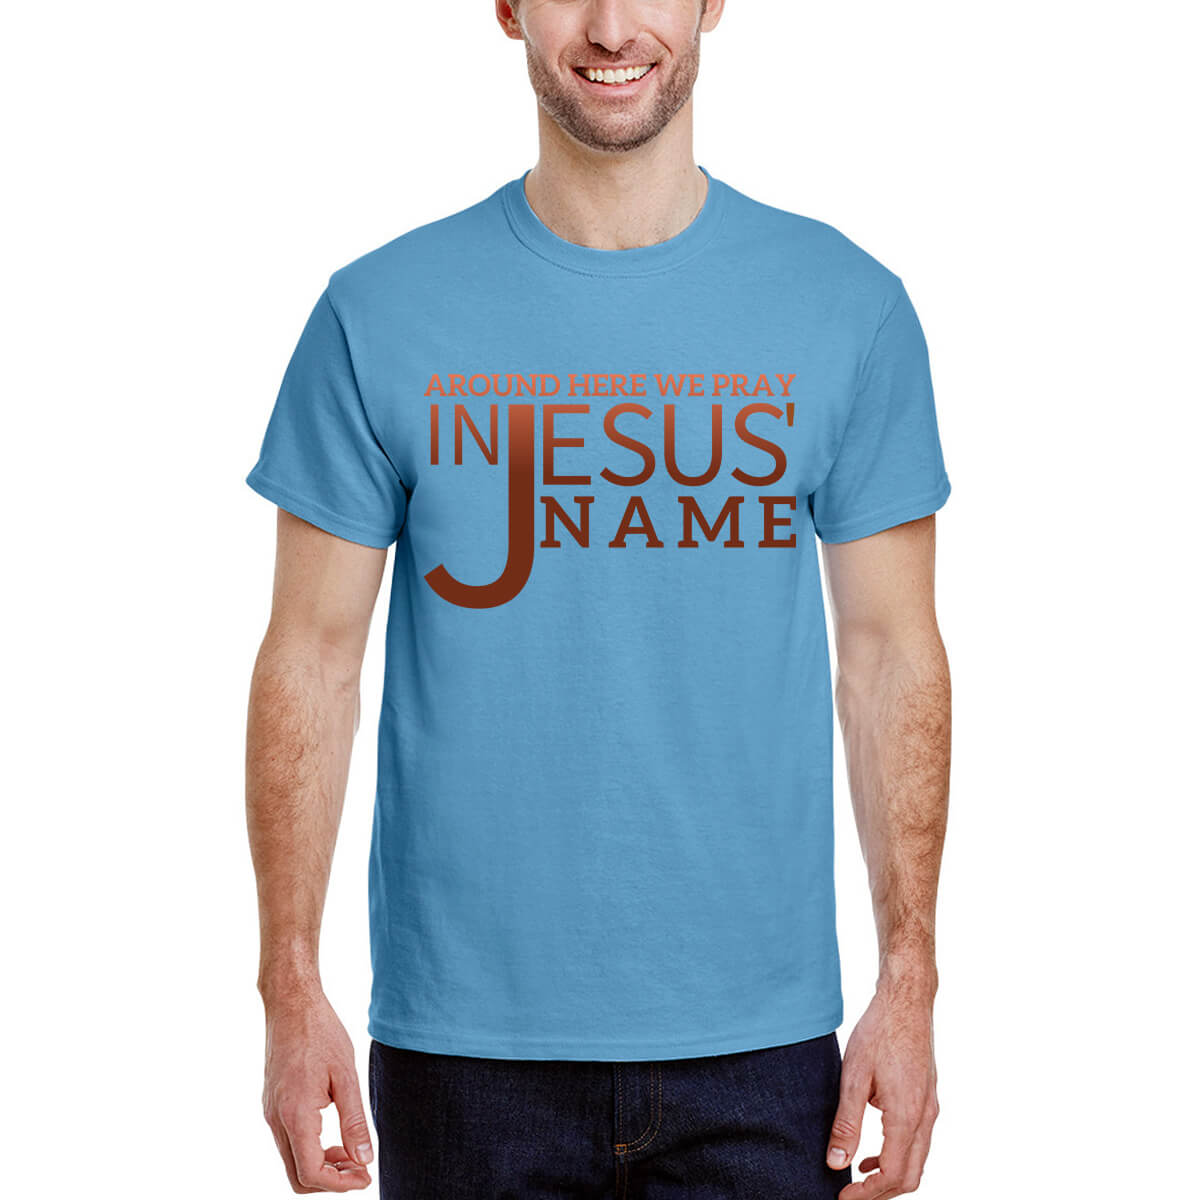 Around Here We Pray In Jesus' Name Men's T-Shirt